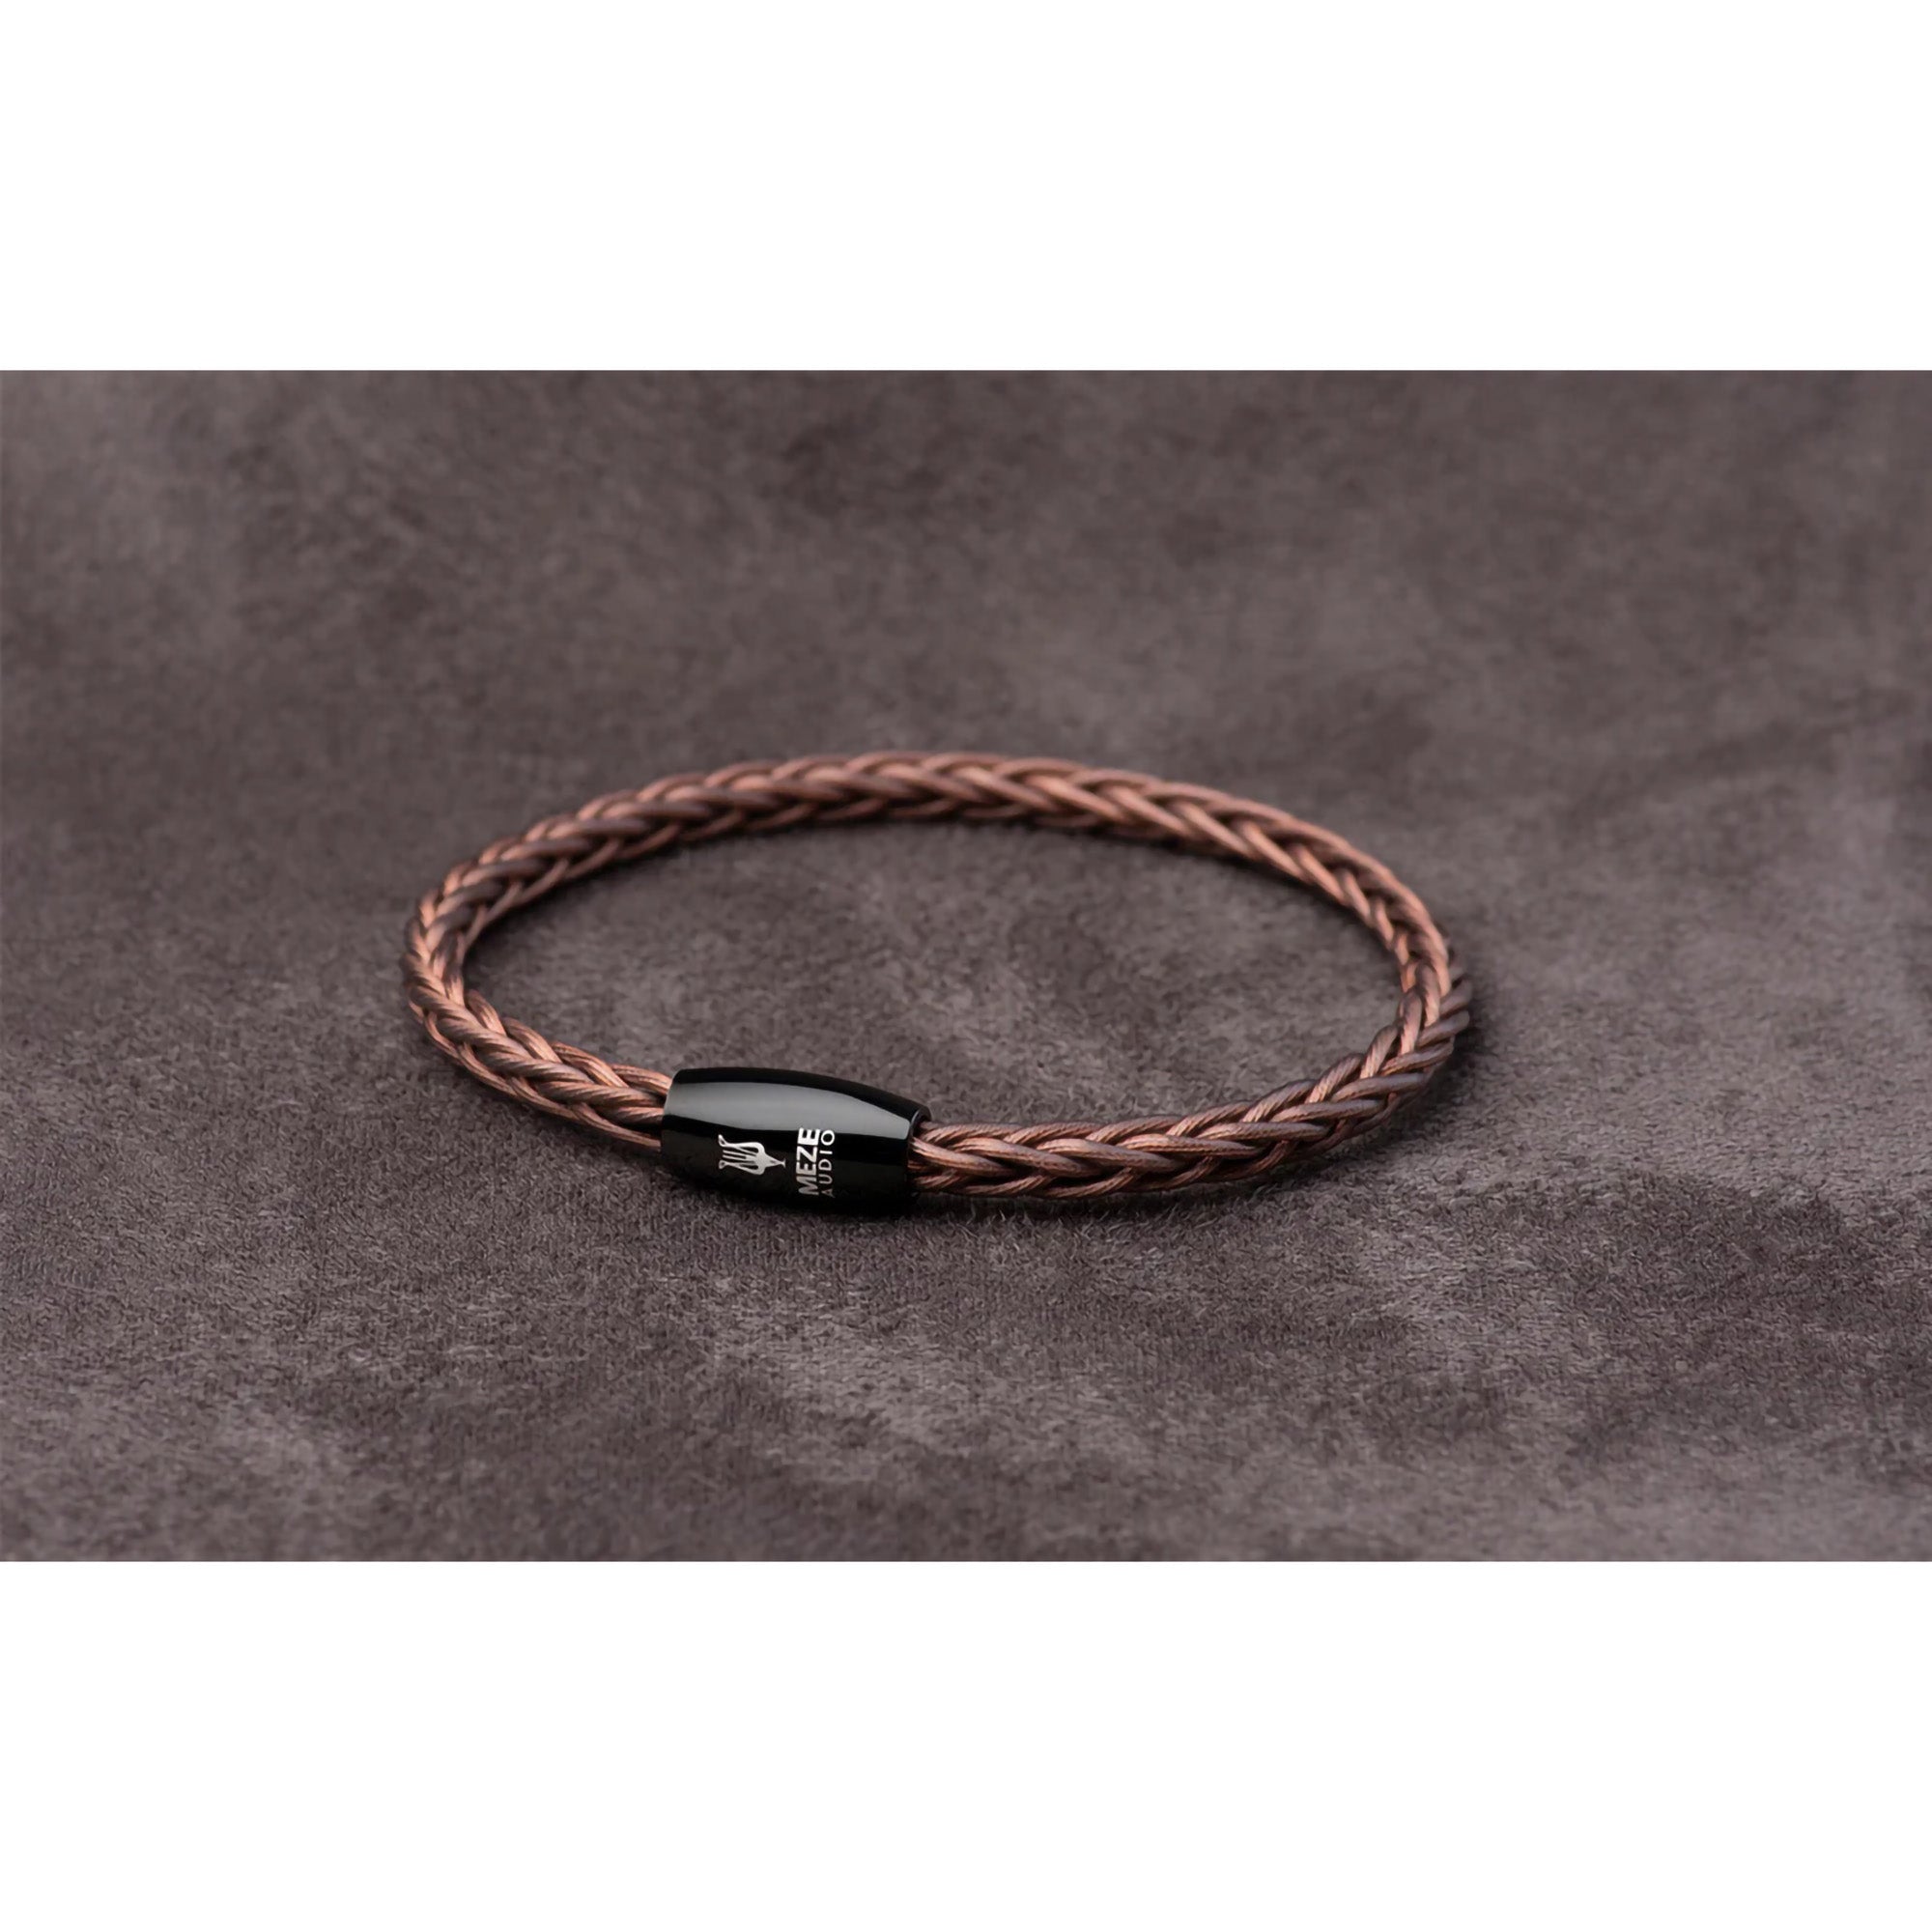 Meze Audio Handcrafted Bracelet